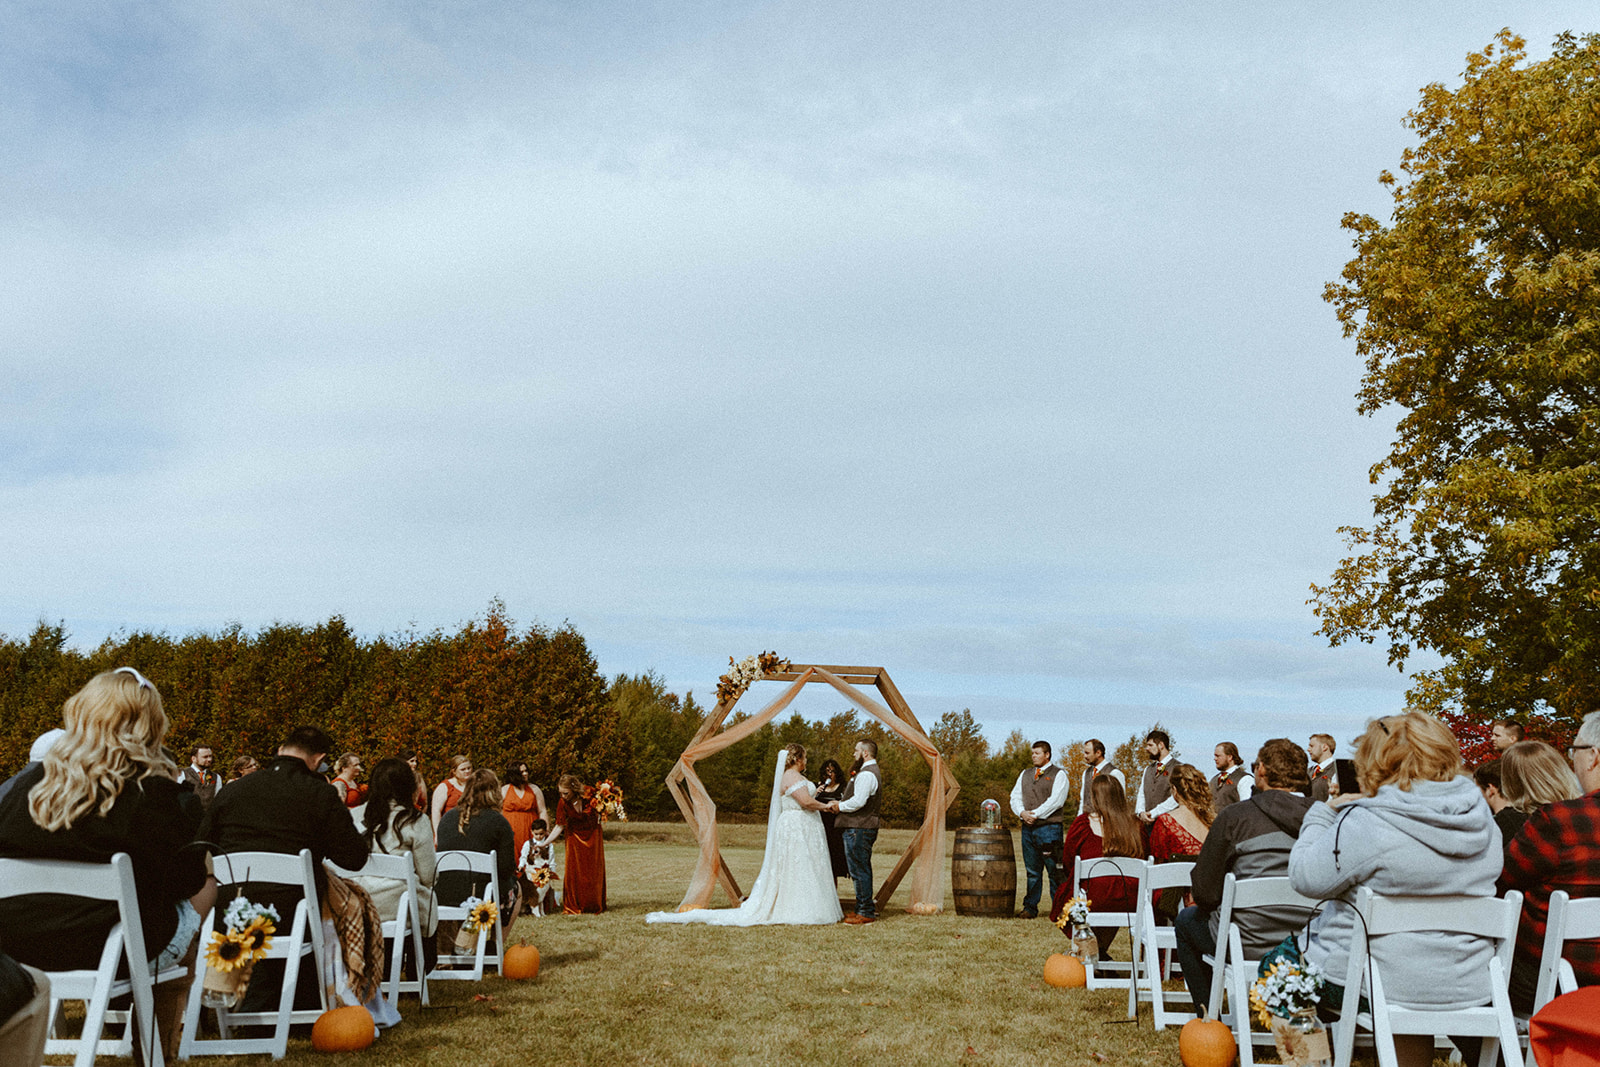 Fall outdoor wedding ceremony in Escanaba, Michigan.